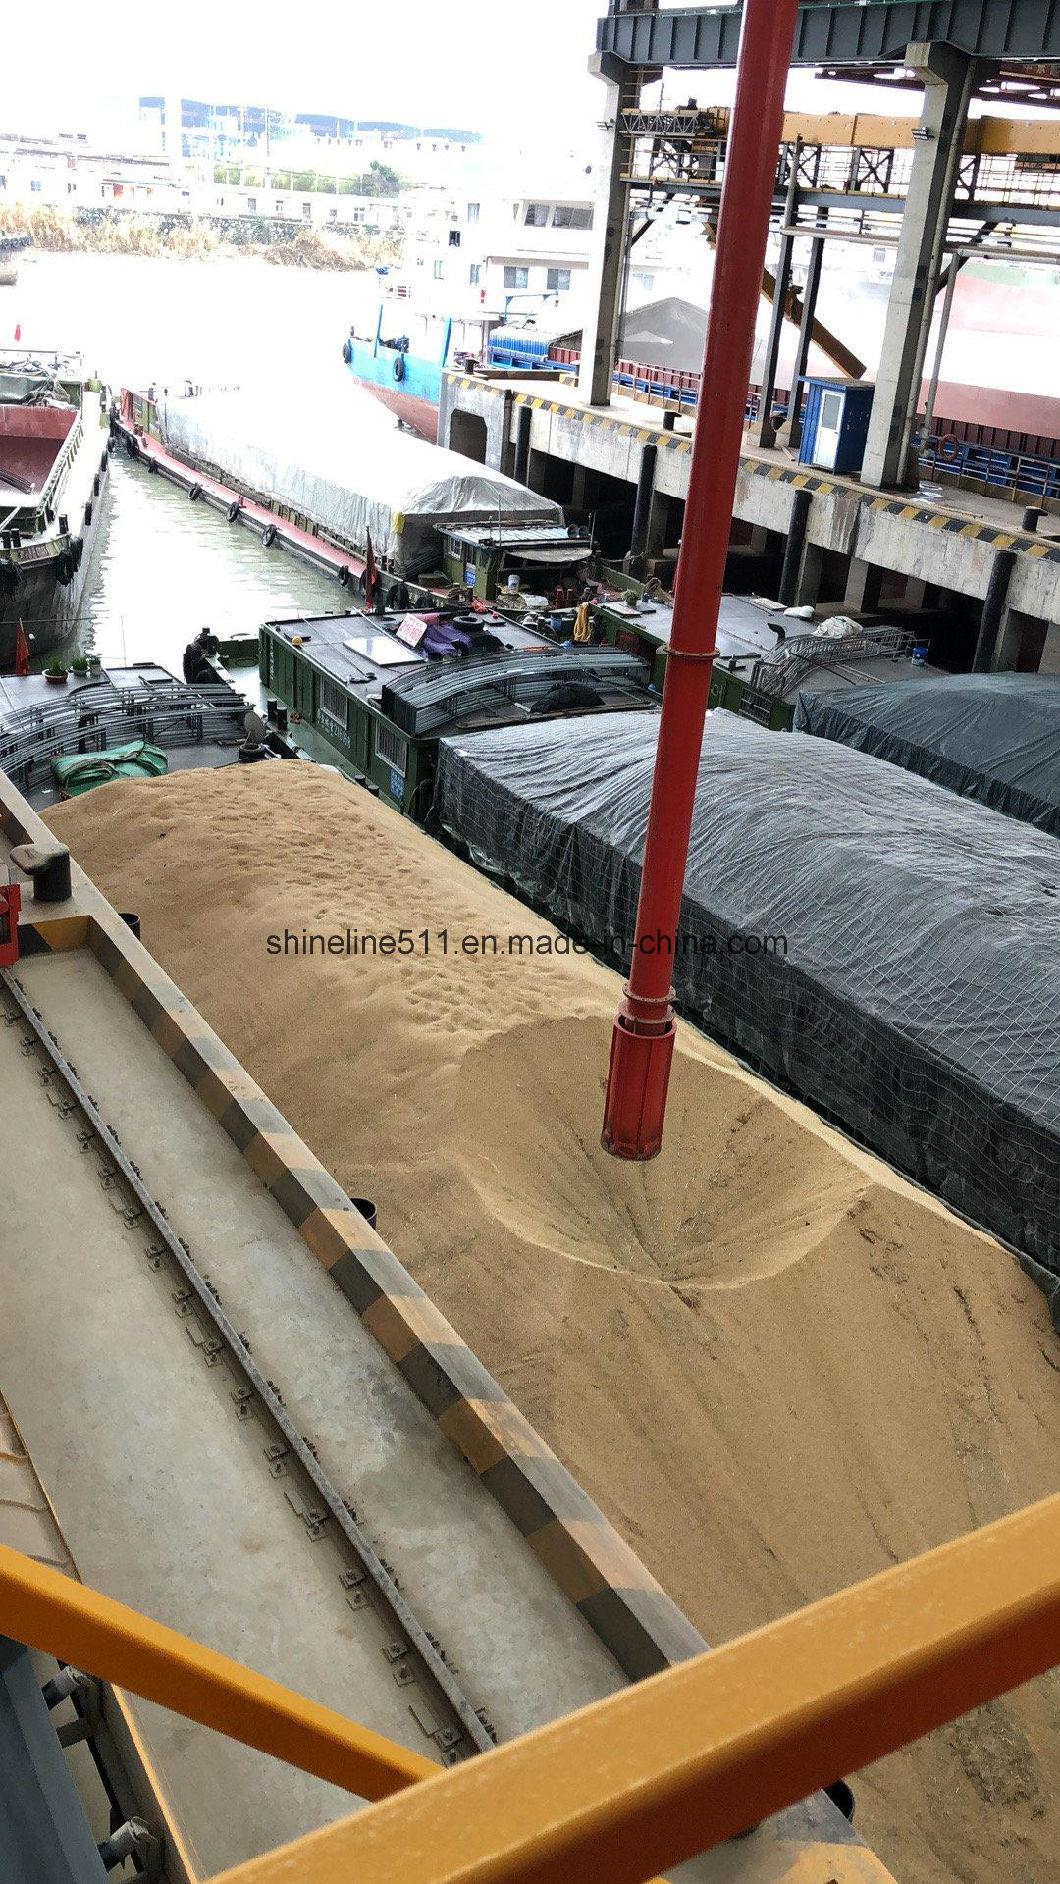 All The Granary Materials System Xiangliang Brand Cross Belt Conveyor Unloader